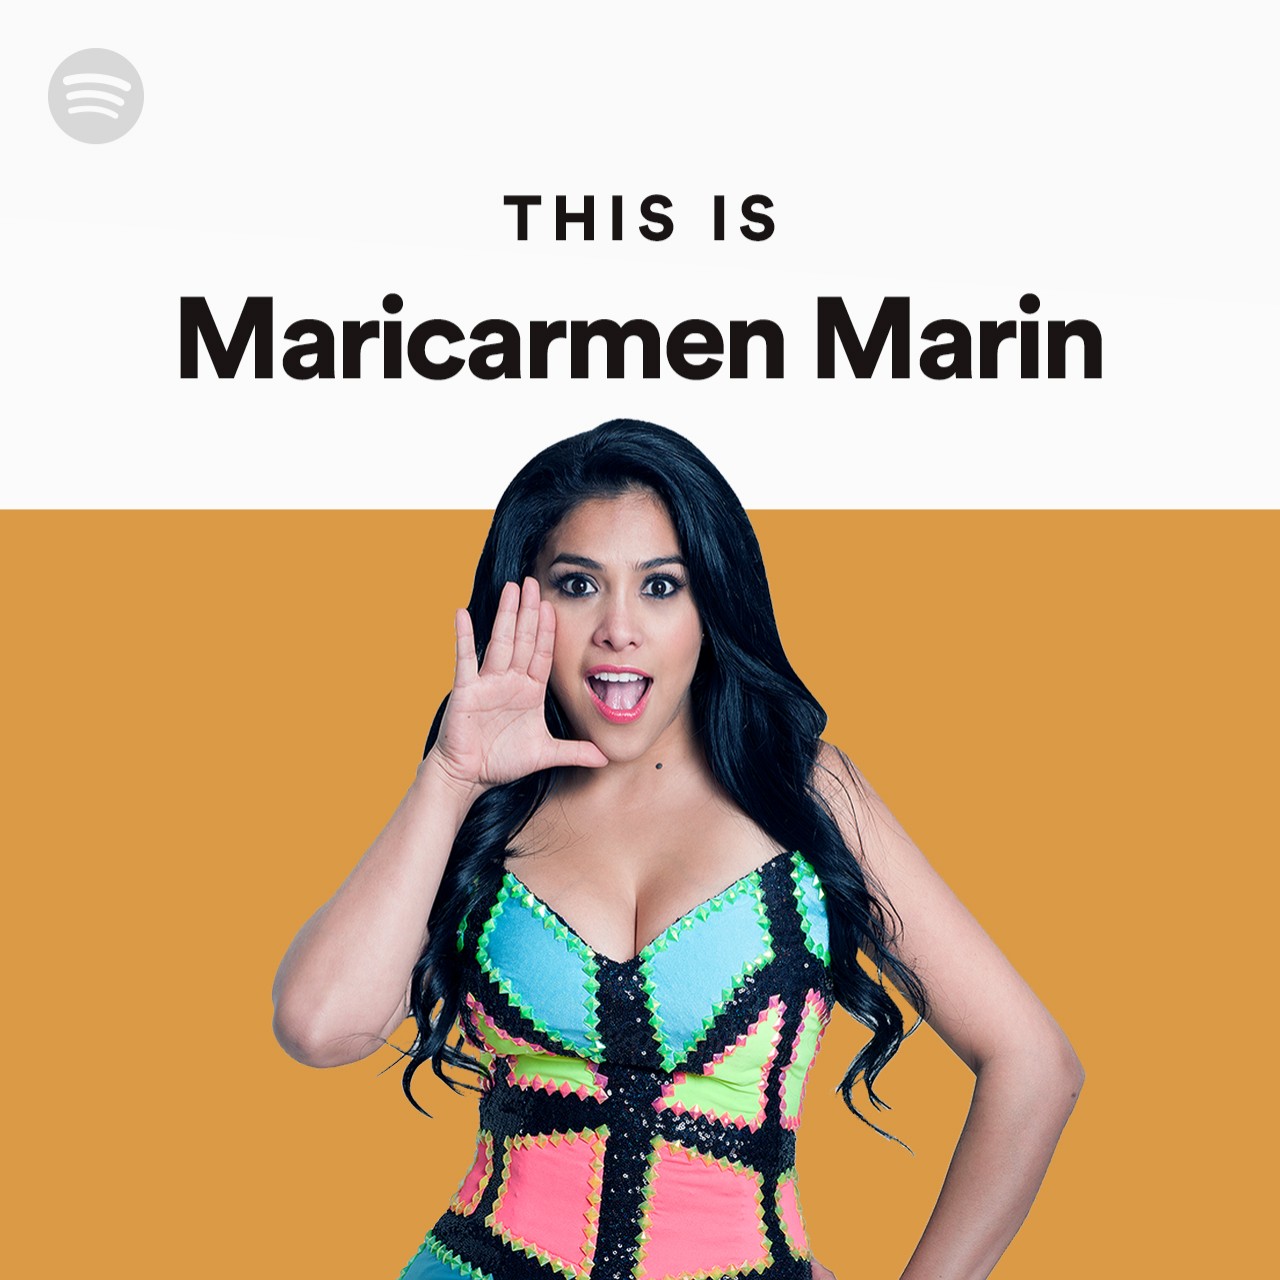 Mari Carmen Marin